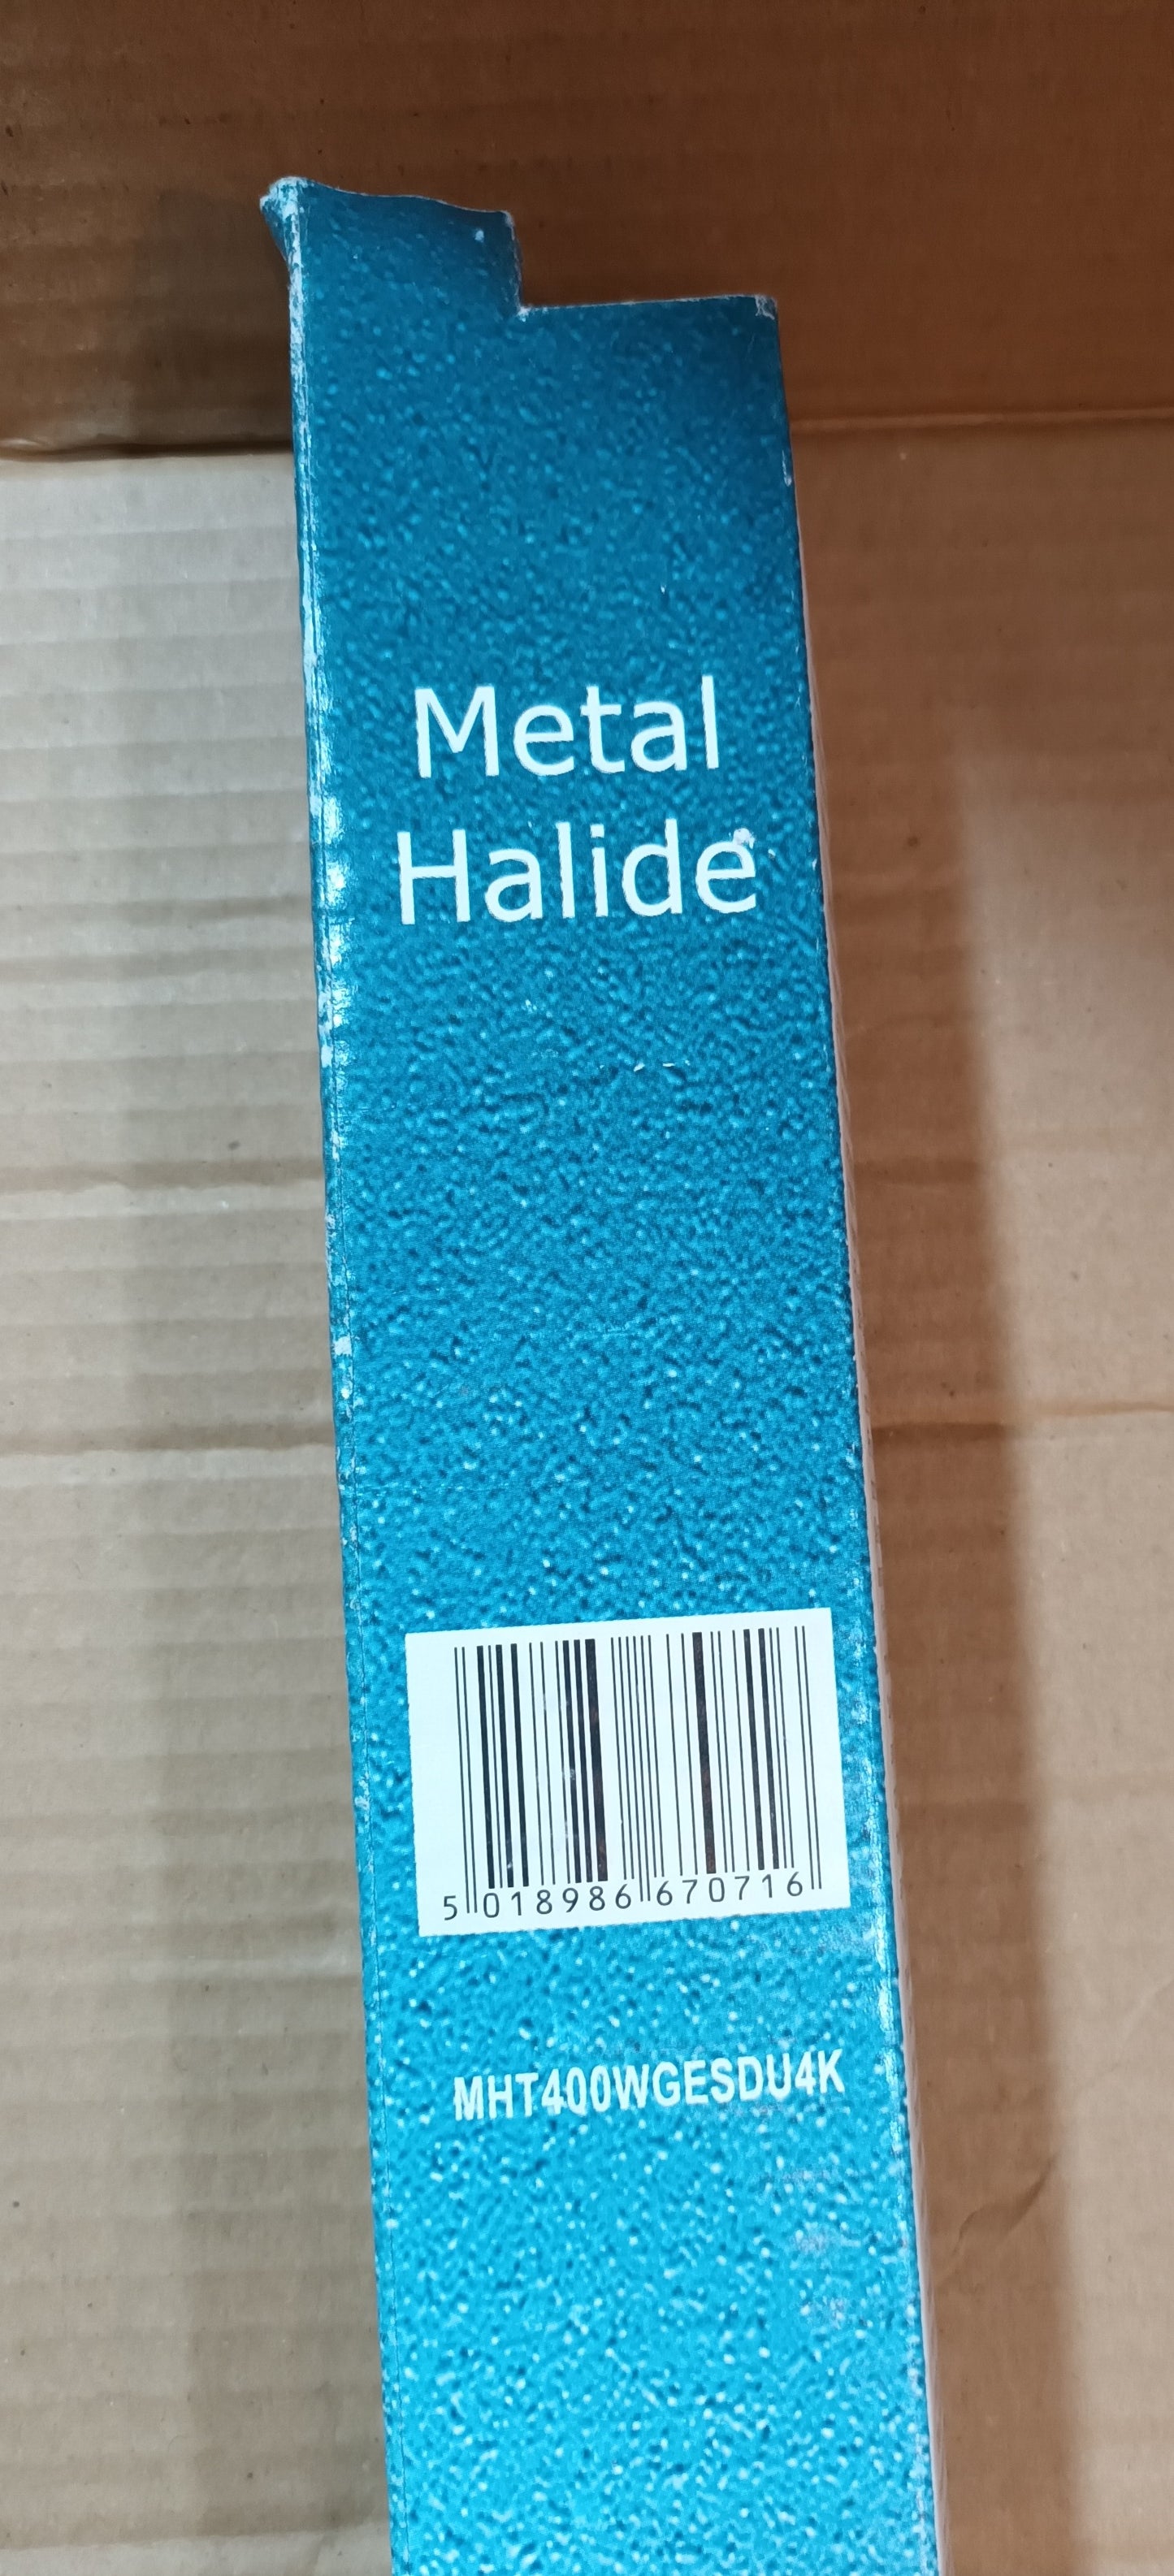 Metal Halide 400w by Crompton 400k E40